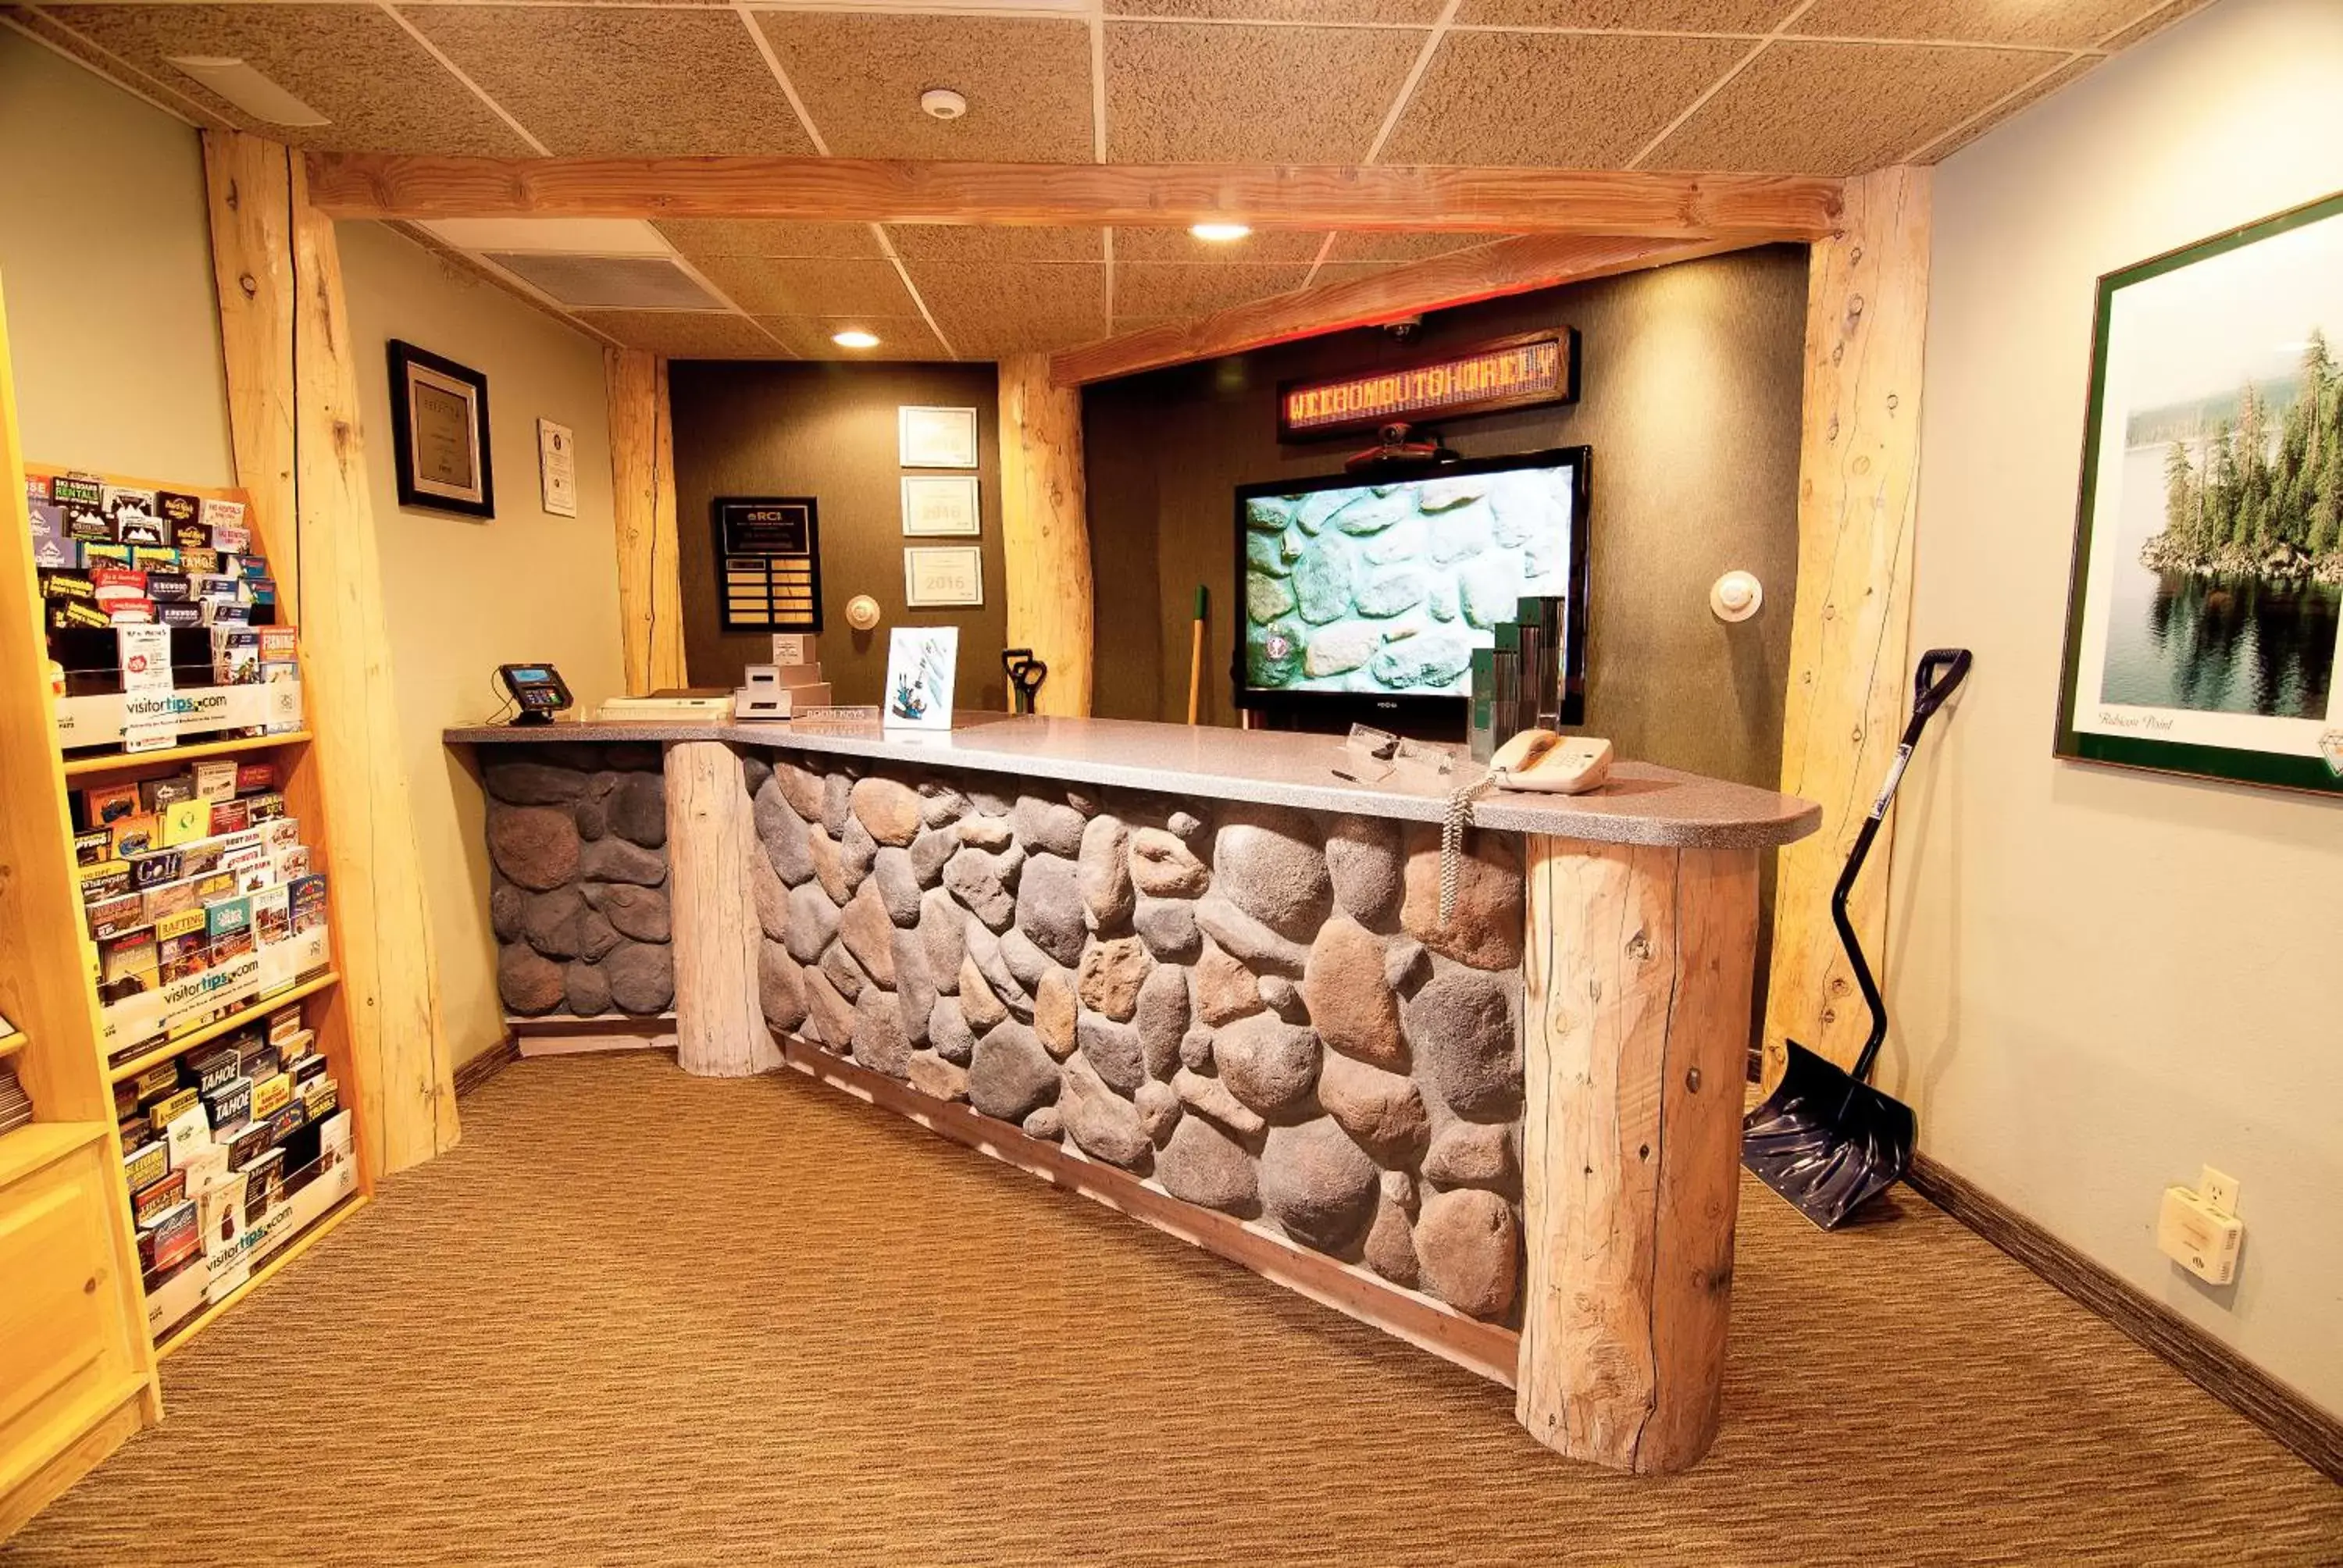 Lobby or reception, Lobby/Reception in The Ridge Sierra